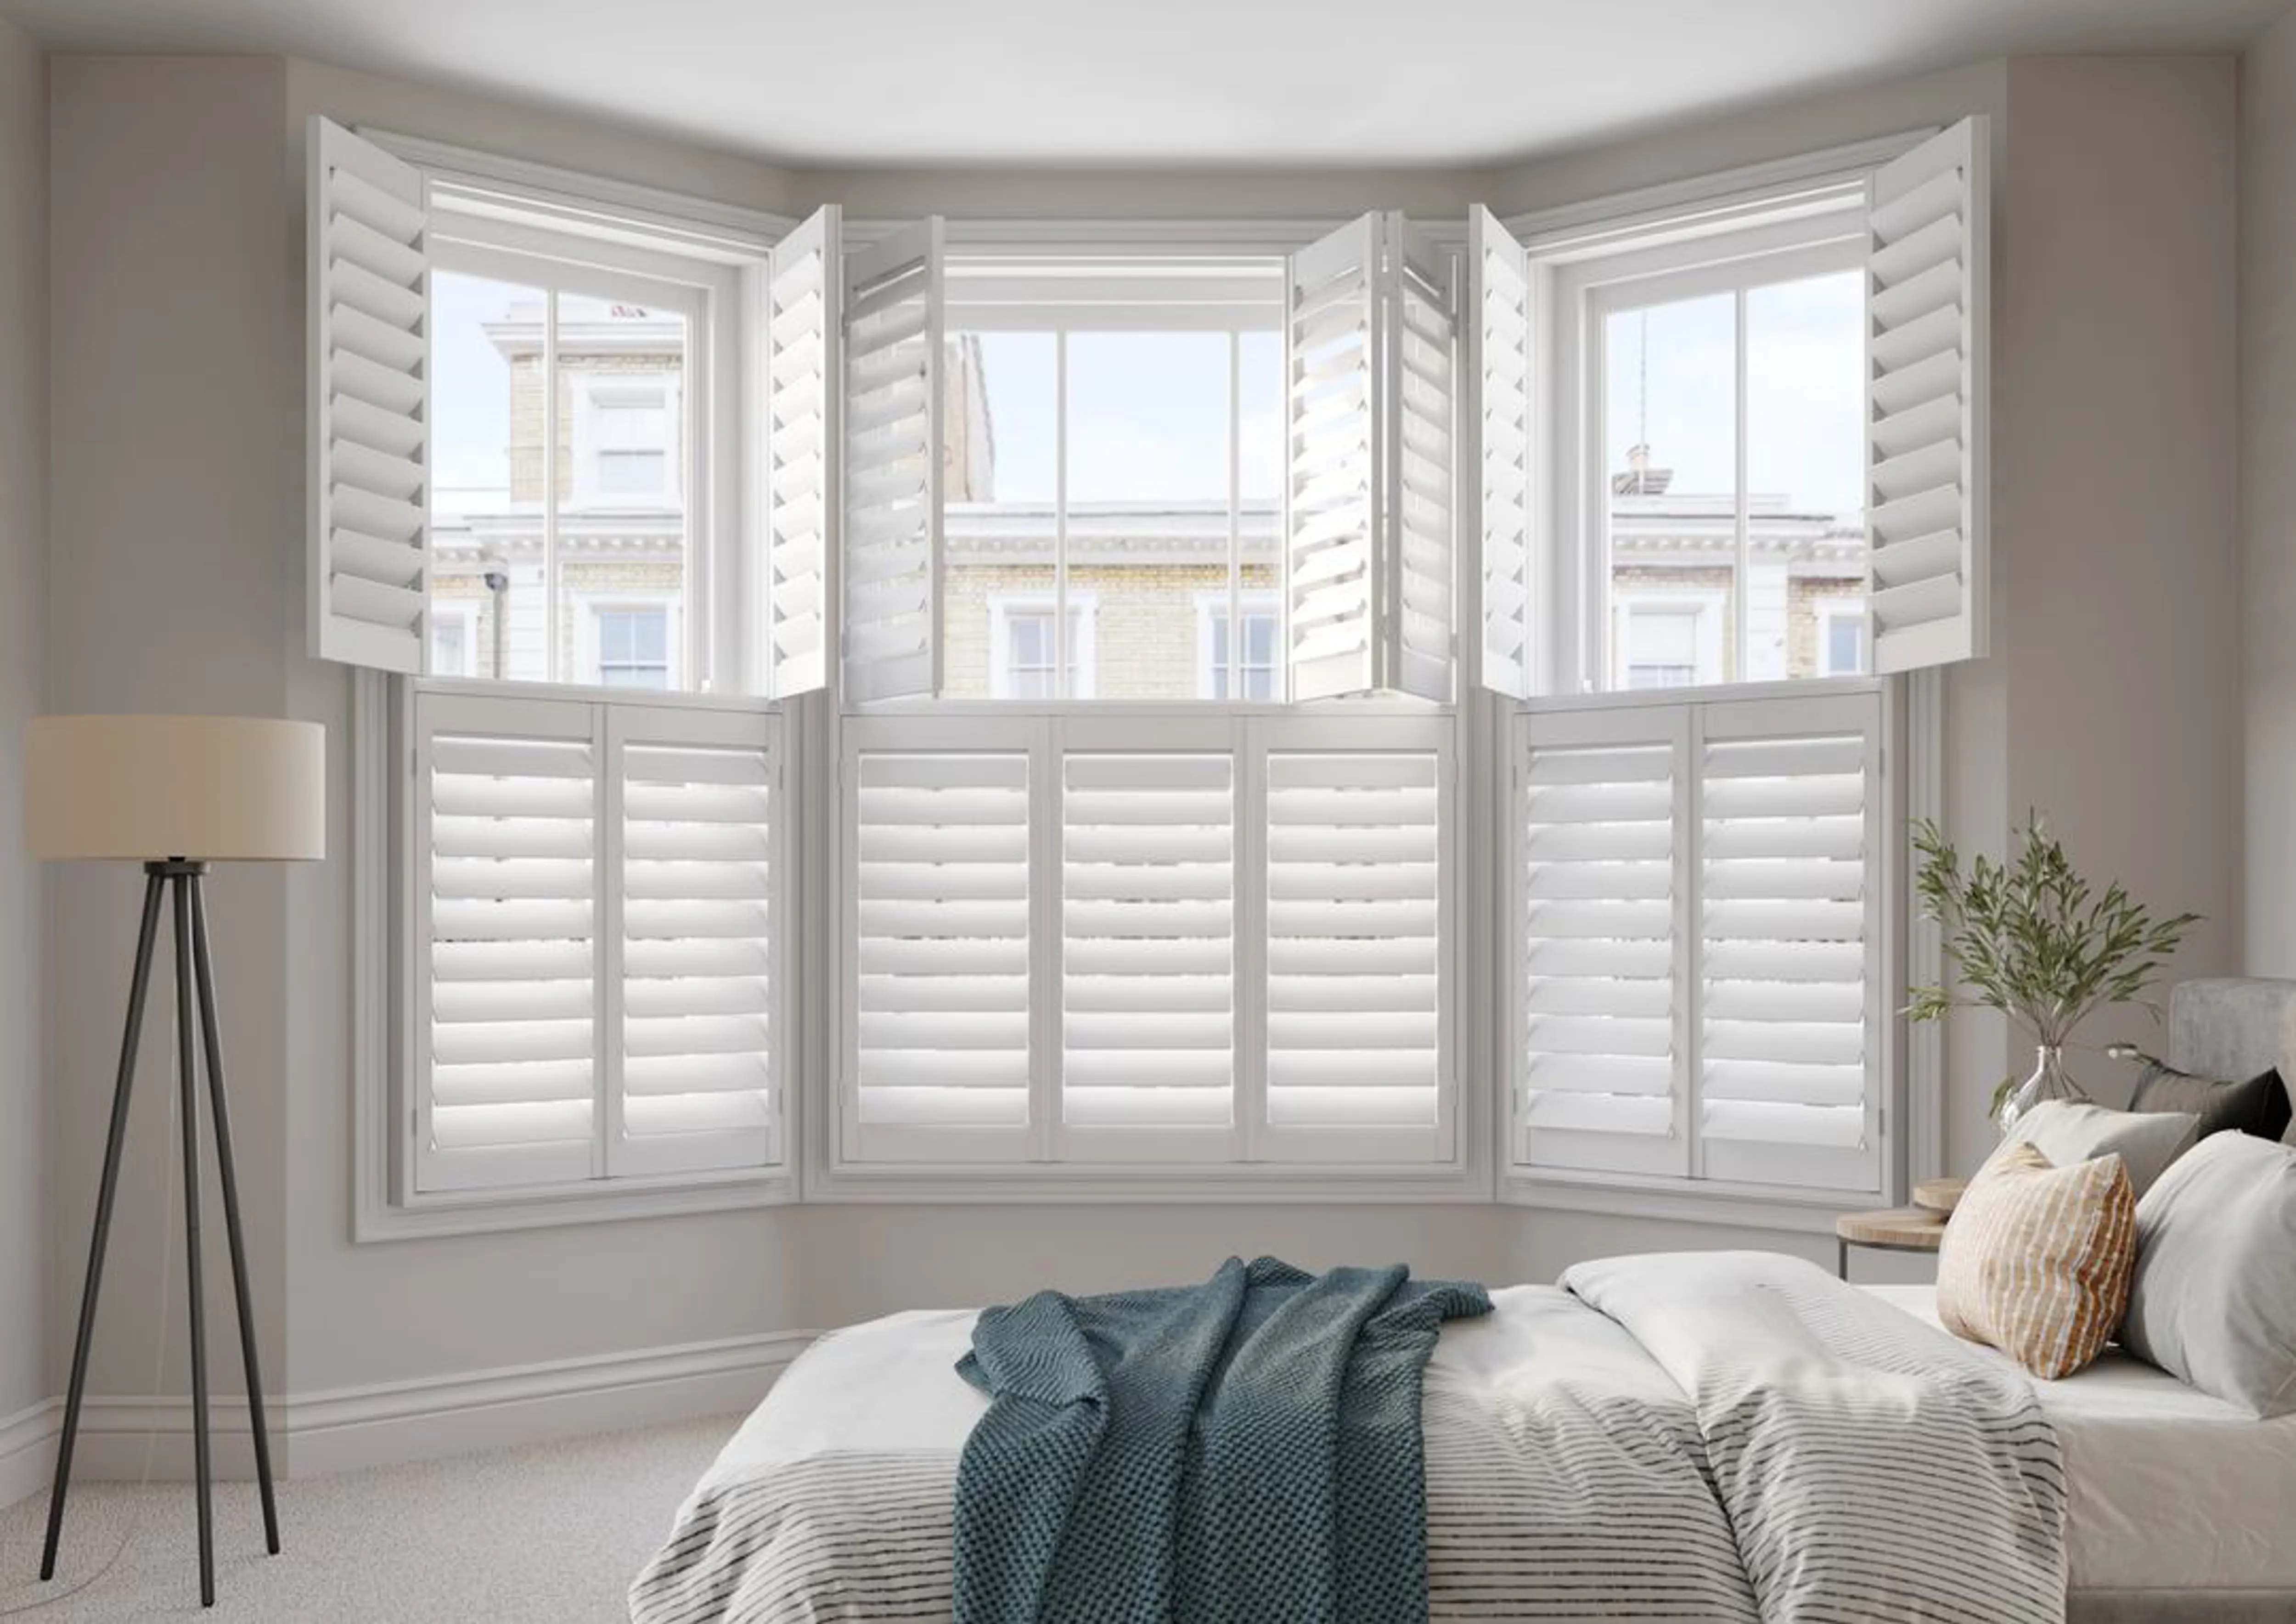 Vivid White bay window wooden shutters in neutral bedroom